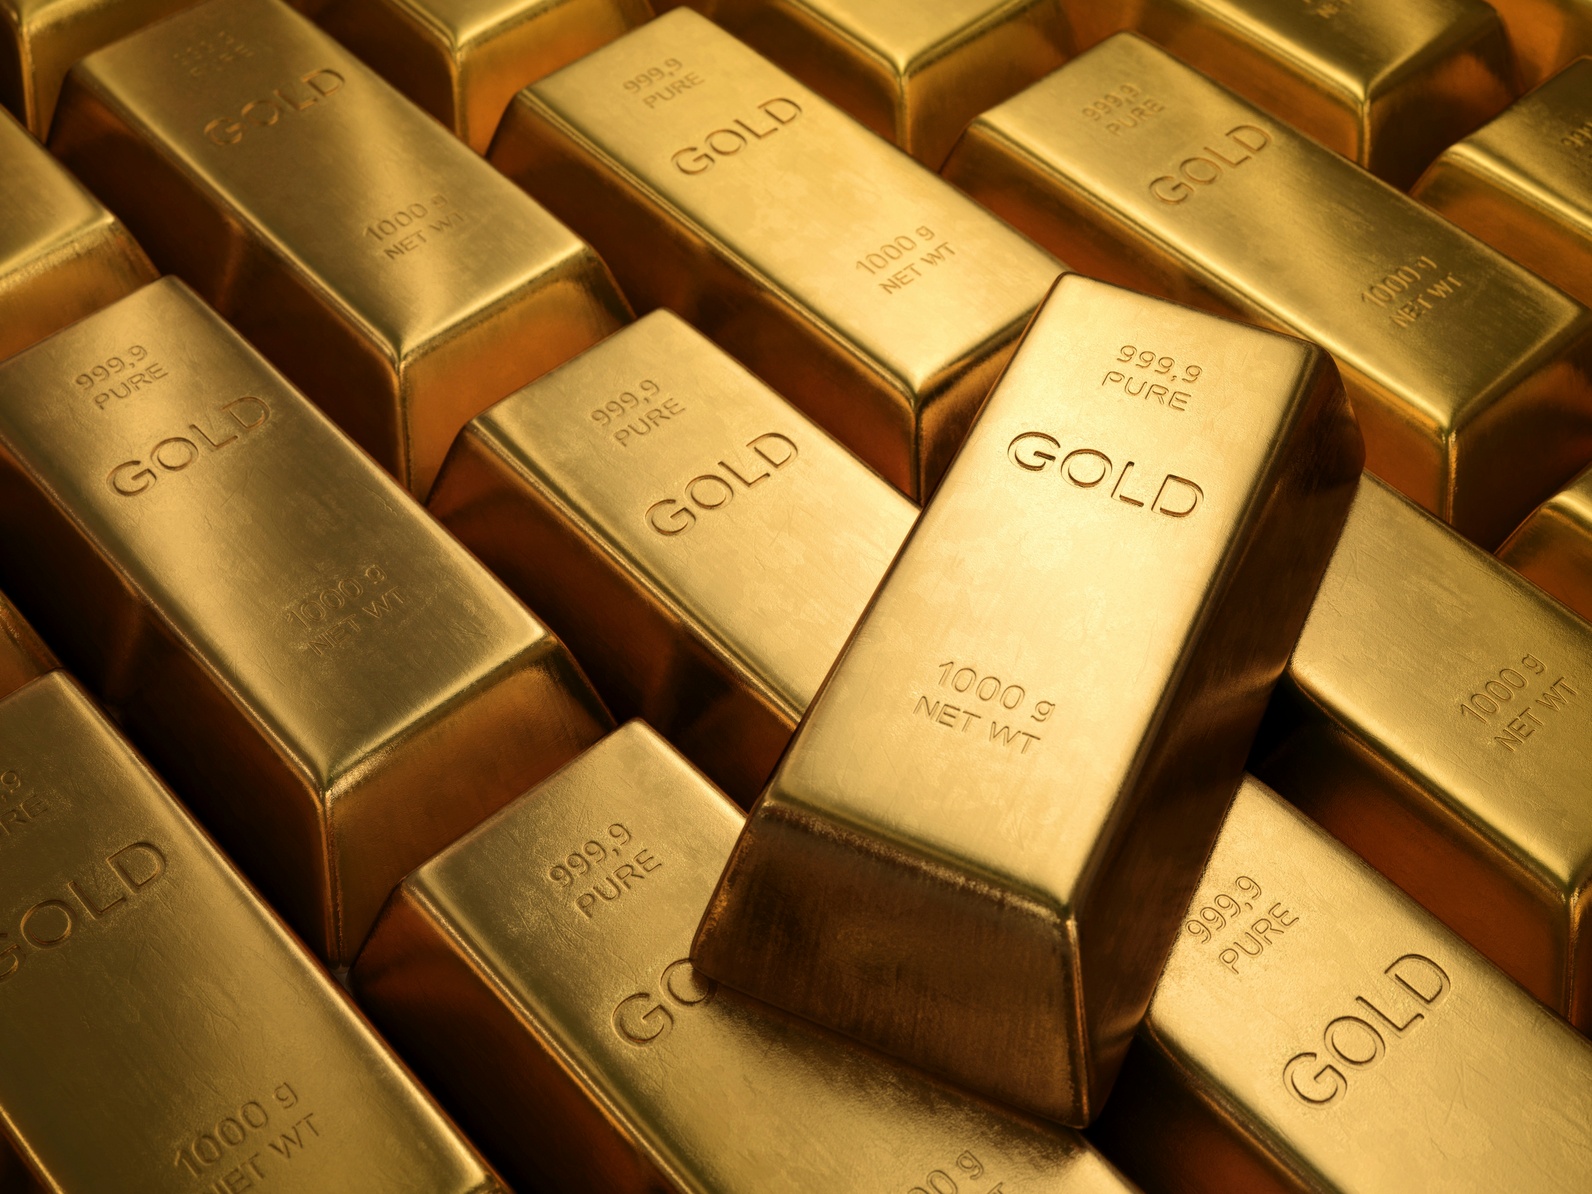 UPDATE: Geopolitische Eskalation treibt den Goldpreis auf ein neues Allzeithoch. Die mittelfristige Trendwende ich bereits angelkaufen!